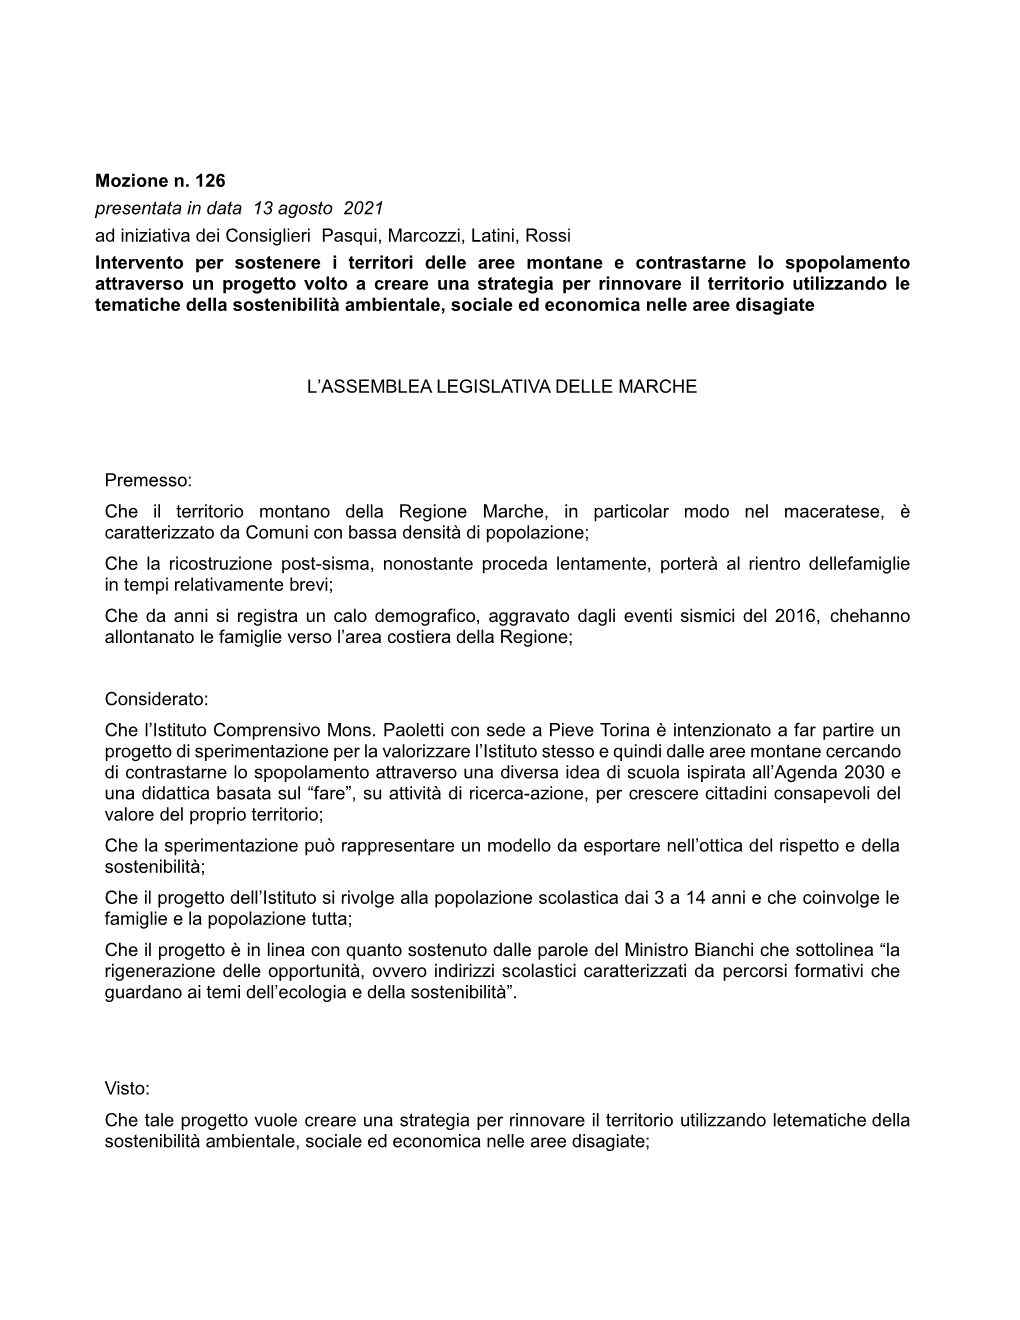 Mozione N. 126 Presentata in Data 13 Agosto 2021 Ad Iniziativa Dei Consiglieri Pasqui, Marcozzi, Latini, Rossi Intervento P